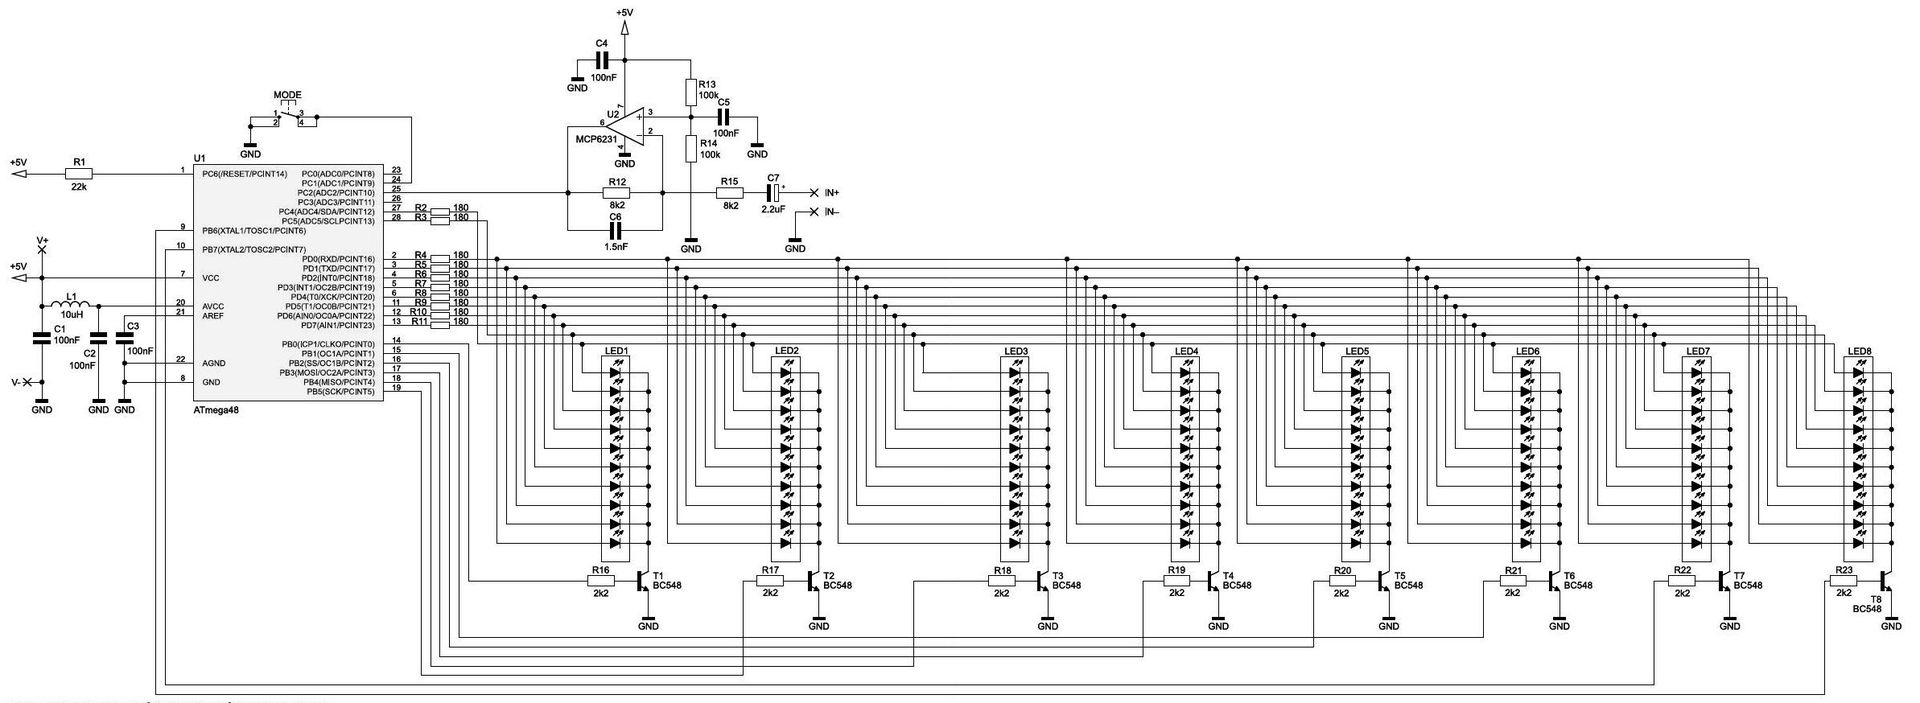 Spectra - анализатор спектра звукового сигнала - схема